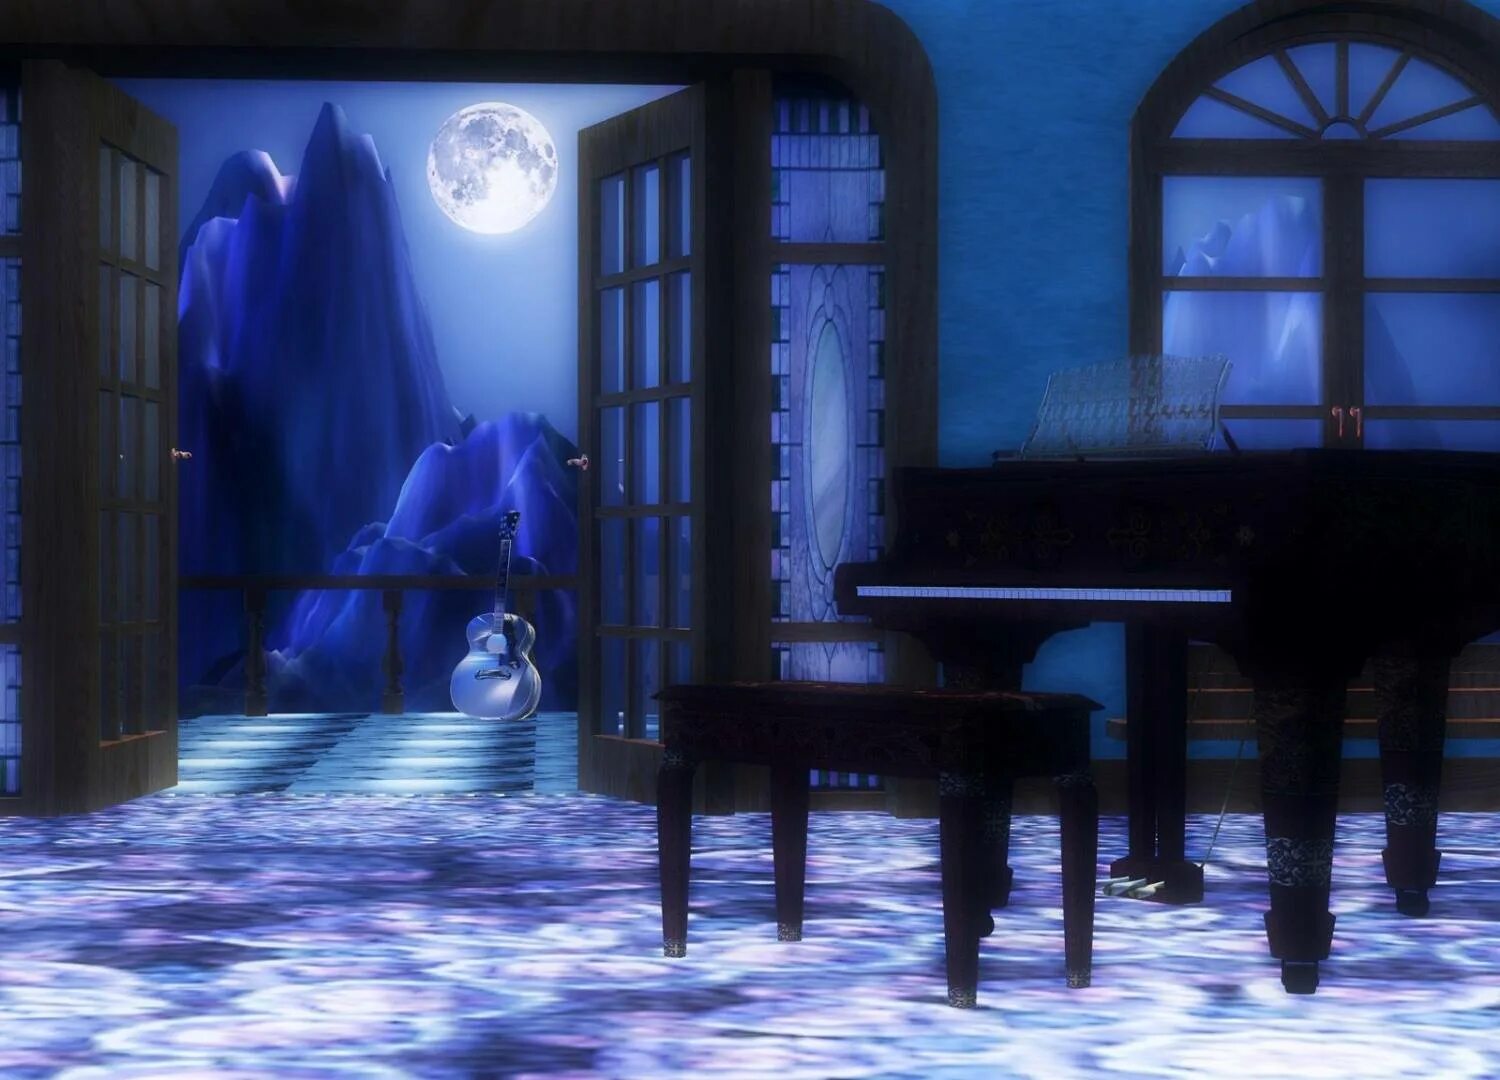 Свет яркий свет полон зал. Лунный свет в комнате. Комната залитая лунным светом. Фортепиано ночью в комнате. Комната с пианино арт.